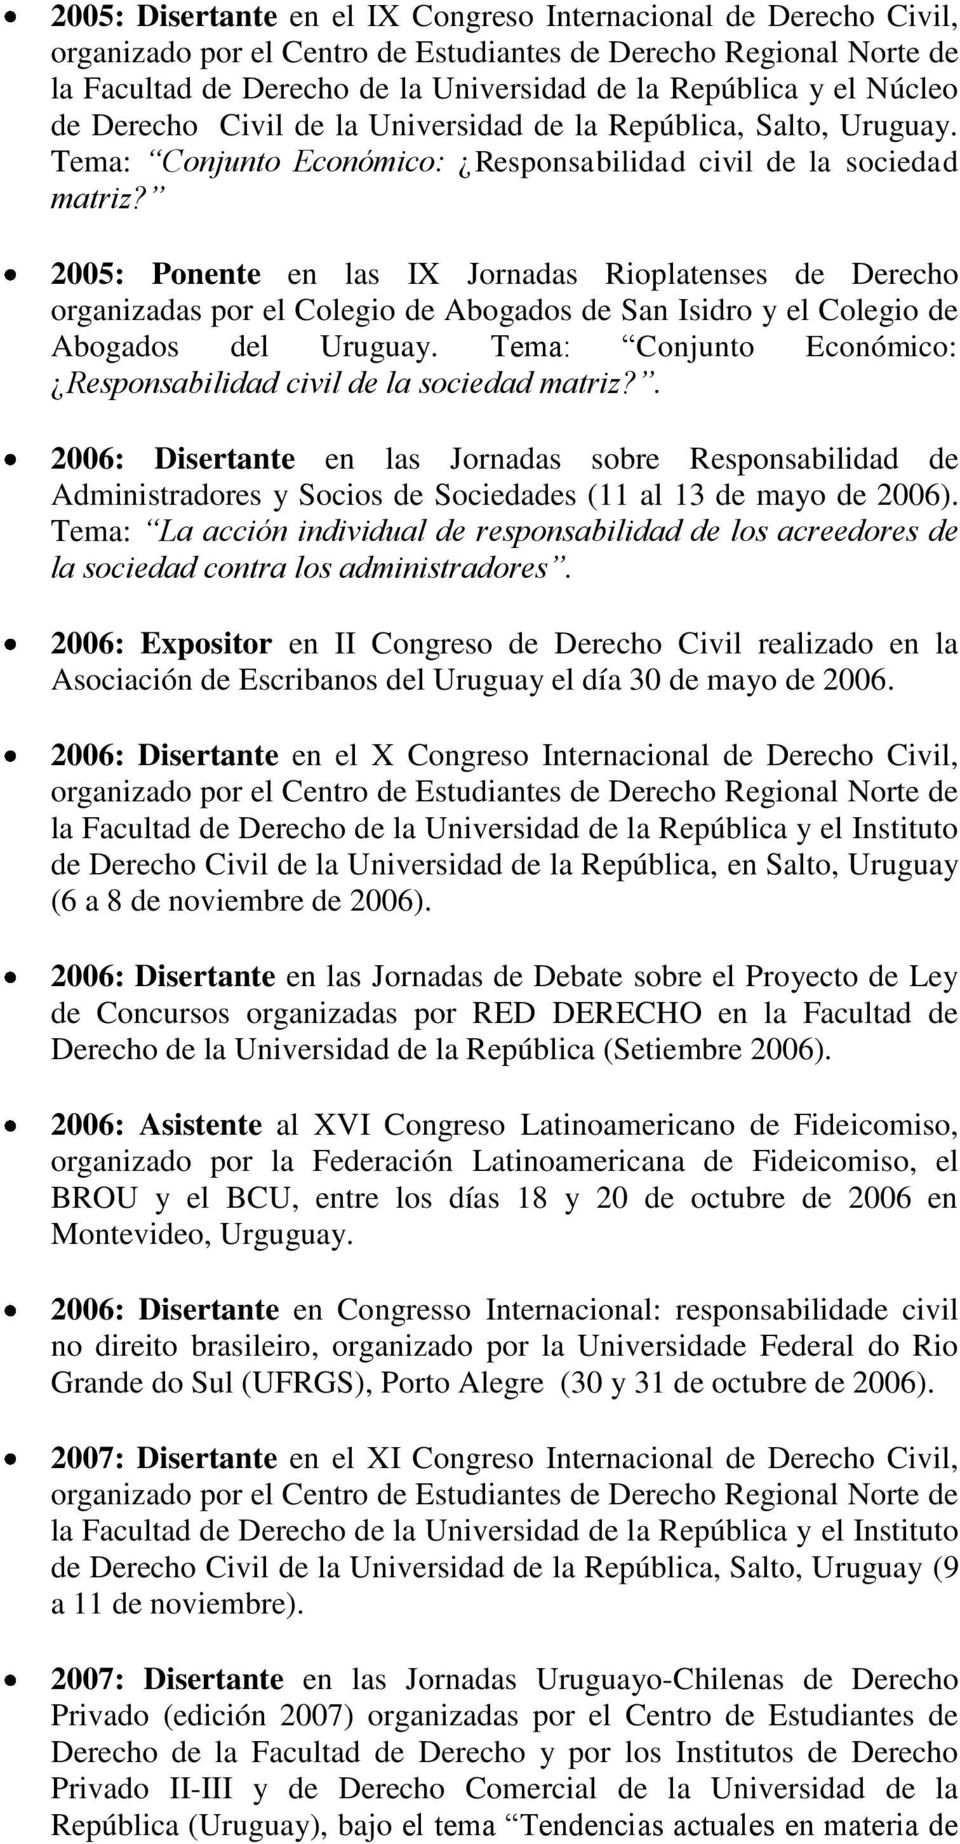 2005: Ponente en las IX Jornadas Rioplatenses de Derecho organizadas por el Colegio de Abogados de San Isidro y el Colegio de Abogados del Uruguay.